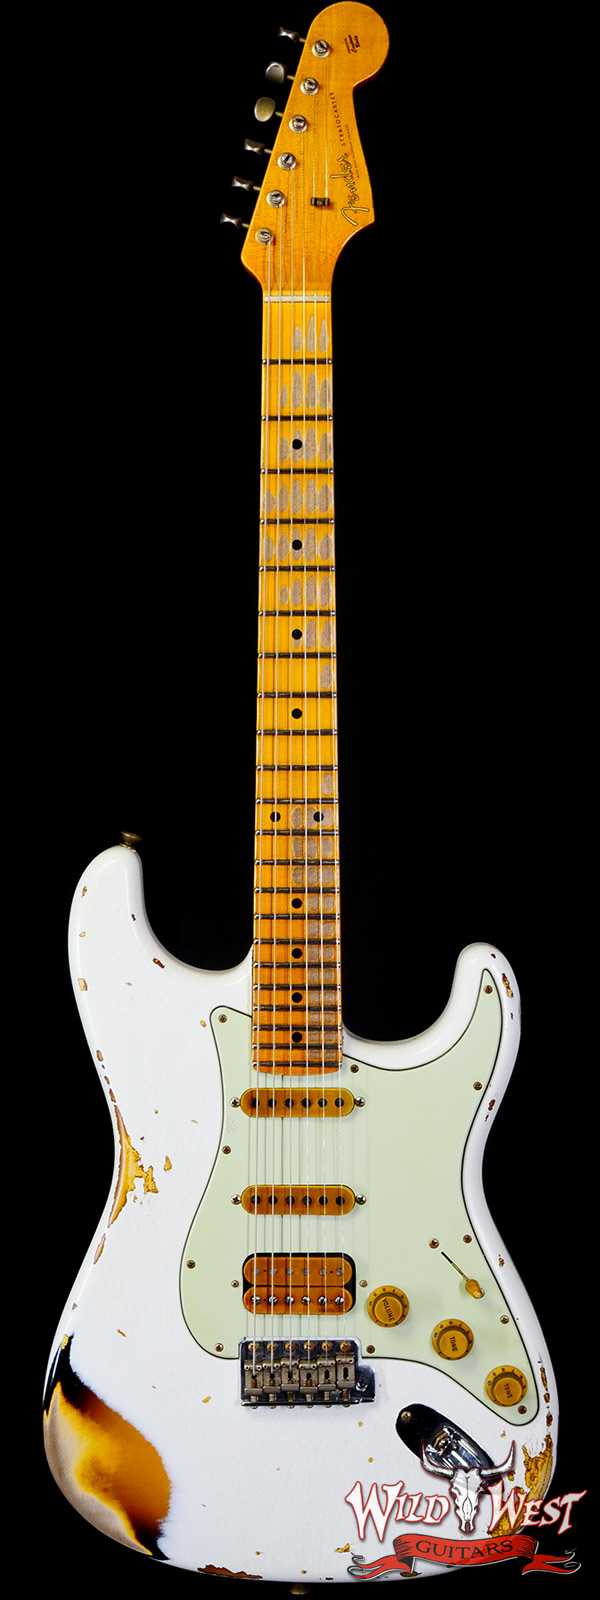 Fender Custom Shop Wild West White Lightning 2.0 Stratocaster HSS Maple Board 22 Frets Heavy Relic 2 Tone Sunburst